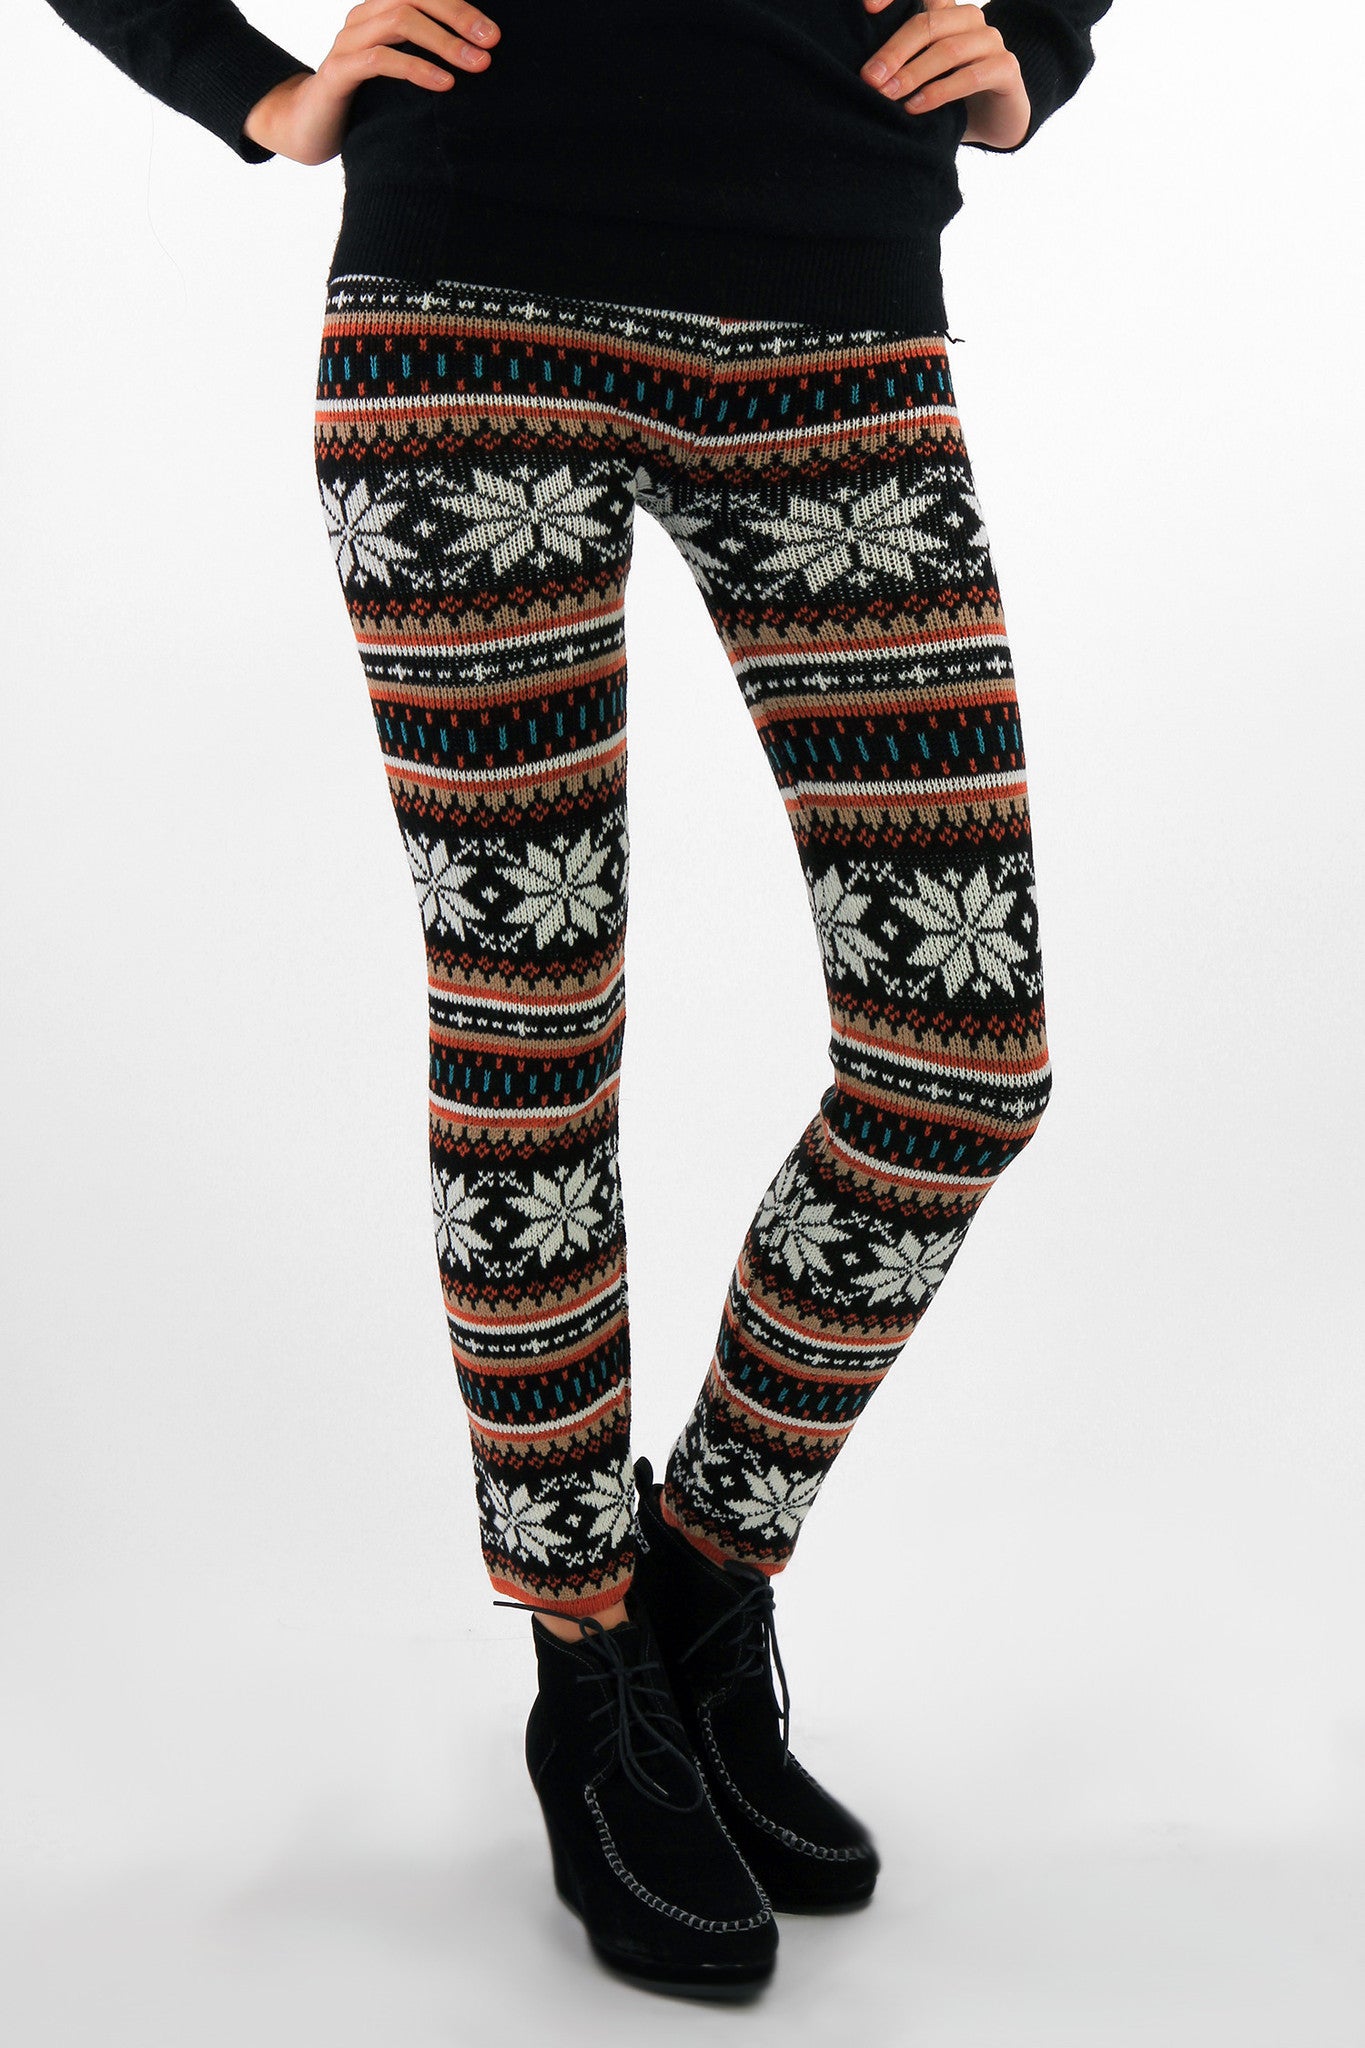 Wonderful Winter Knitted Leggings